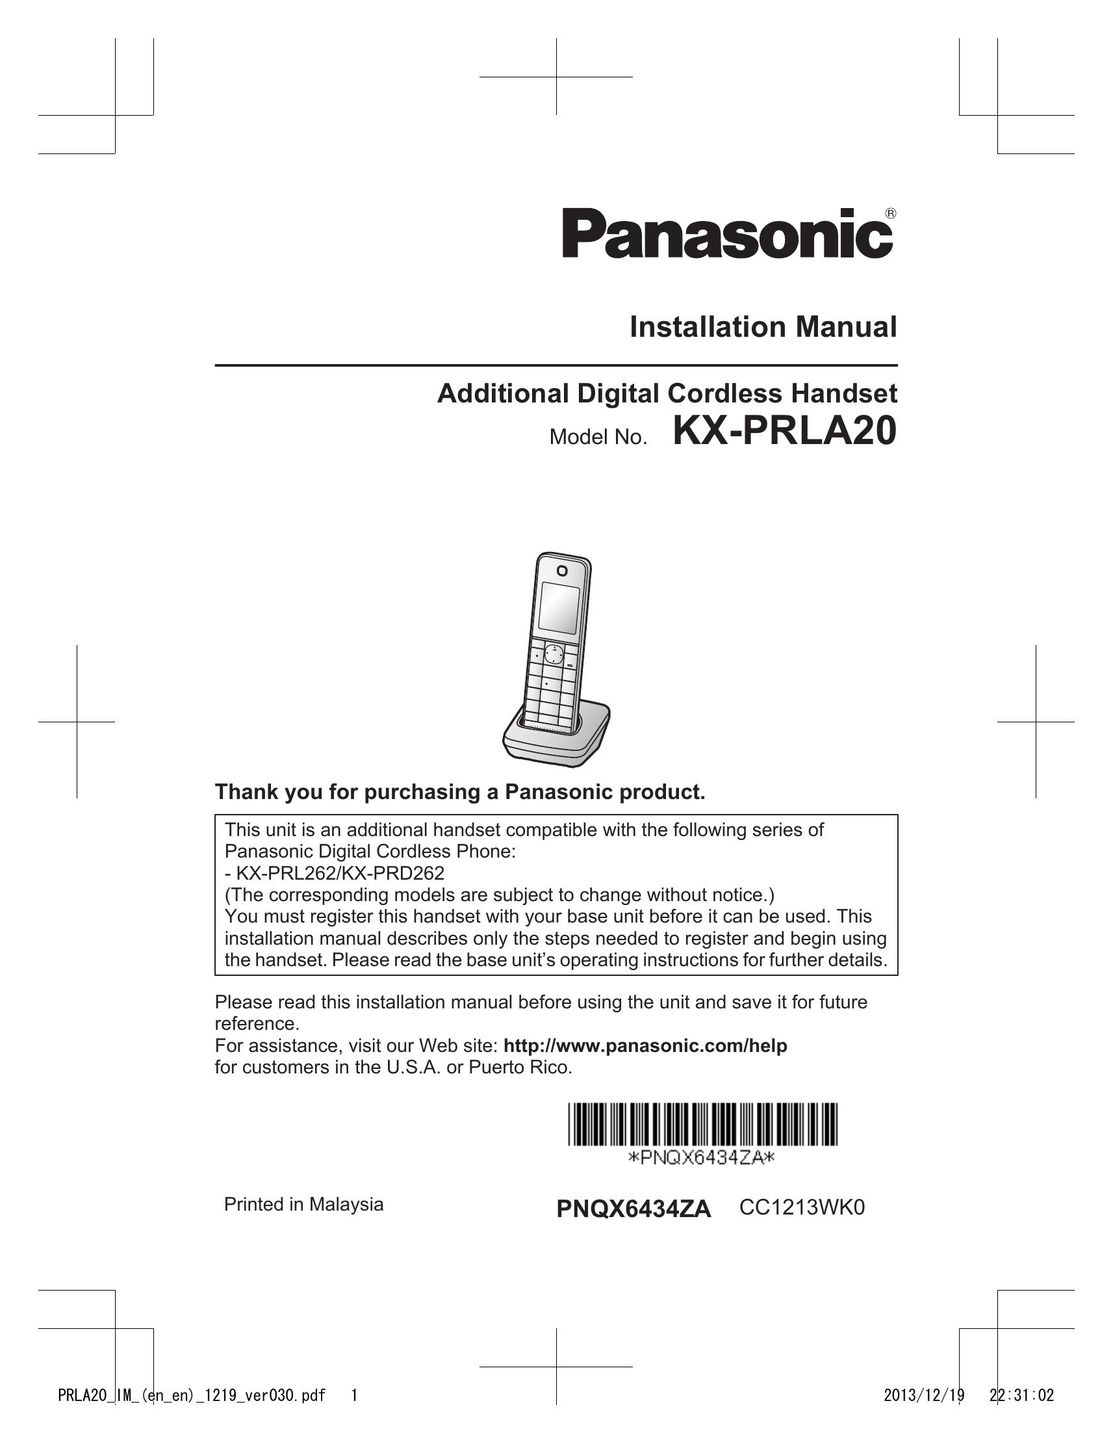 Panasonic KX-PRLA20 Cordless Telephone User Manual